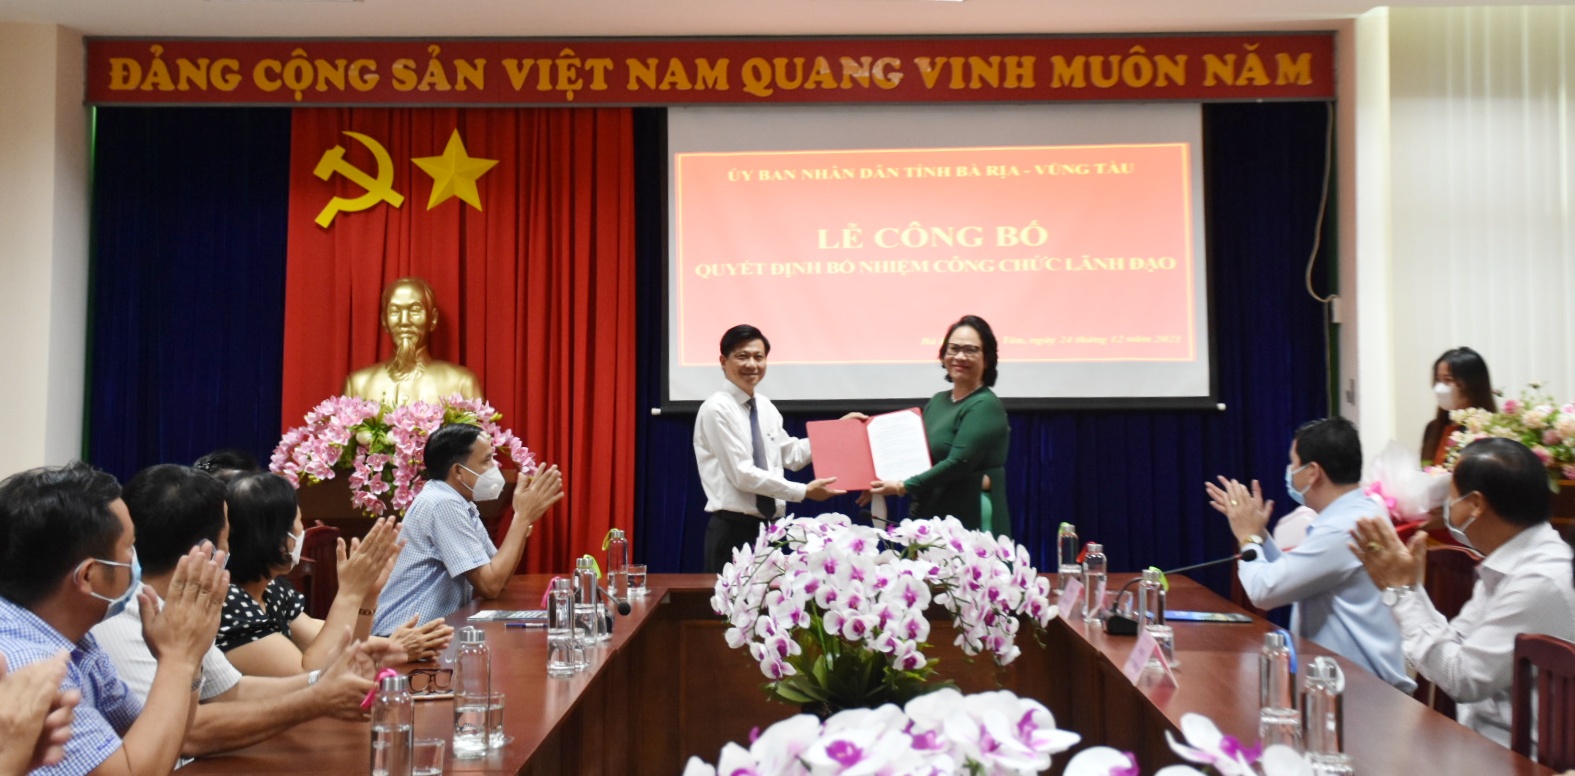 Ông Trần Văn Tuấn, Phó Chủ tịch UBND tỉnh trao quyết định bổ nhiệm Phó Giám đốc Sở LĐ-TBXH cho bà Nguyễn Vân Anh.